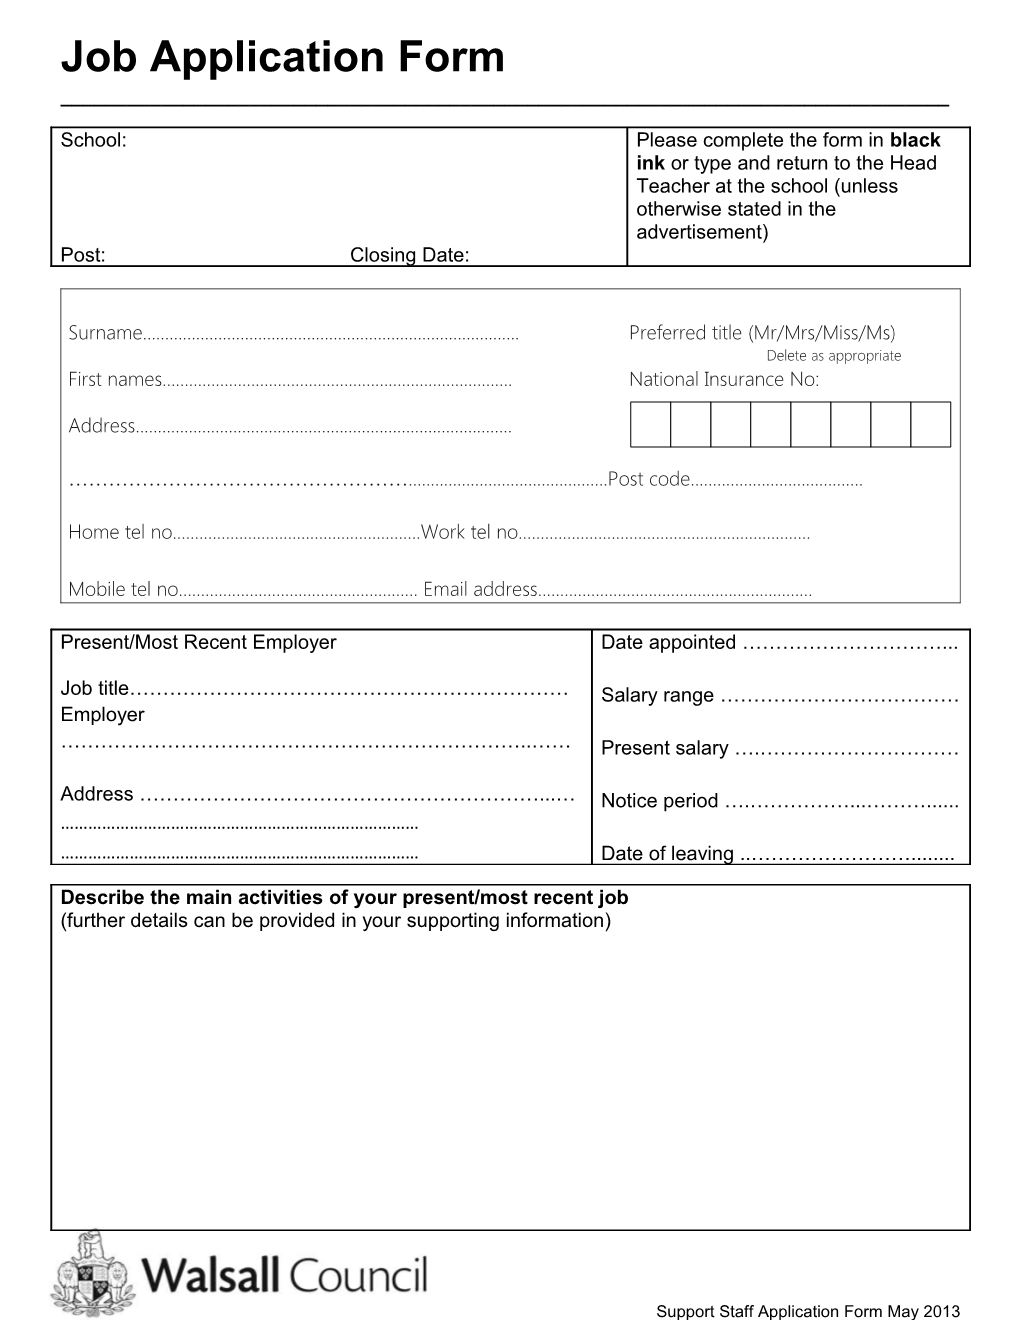 Job Application Form s30